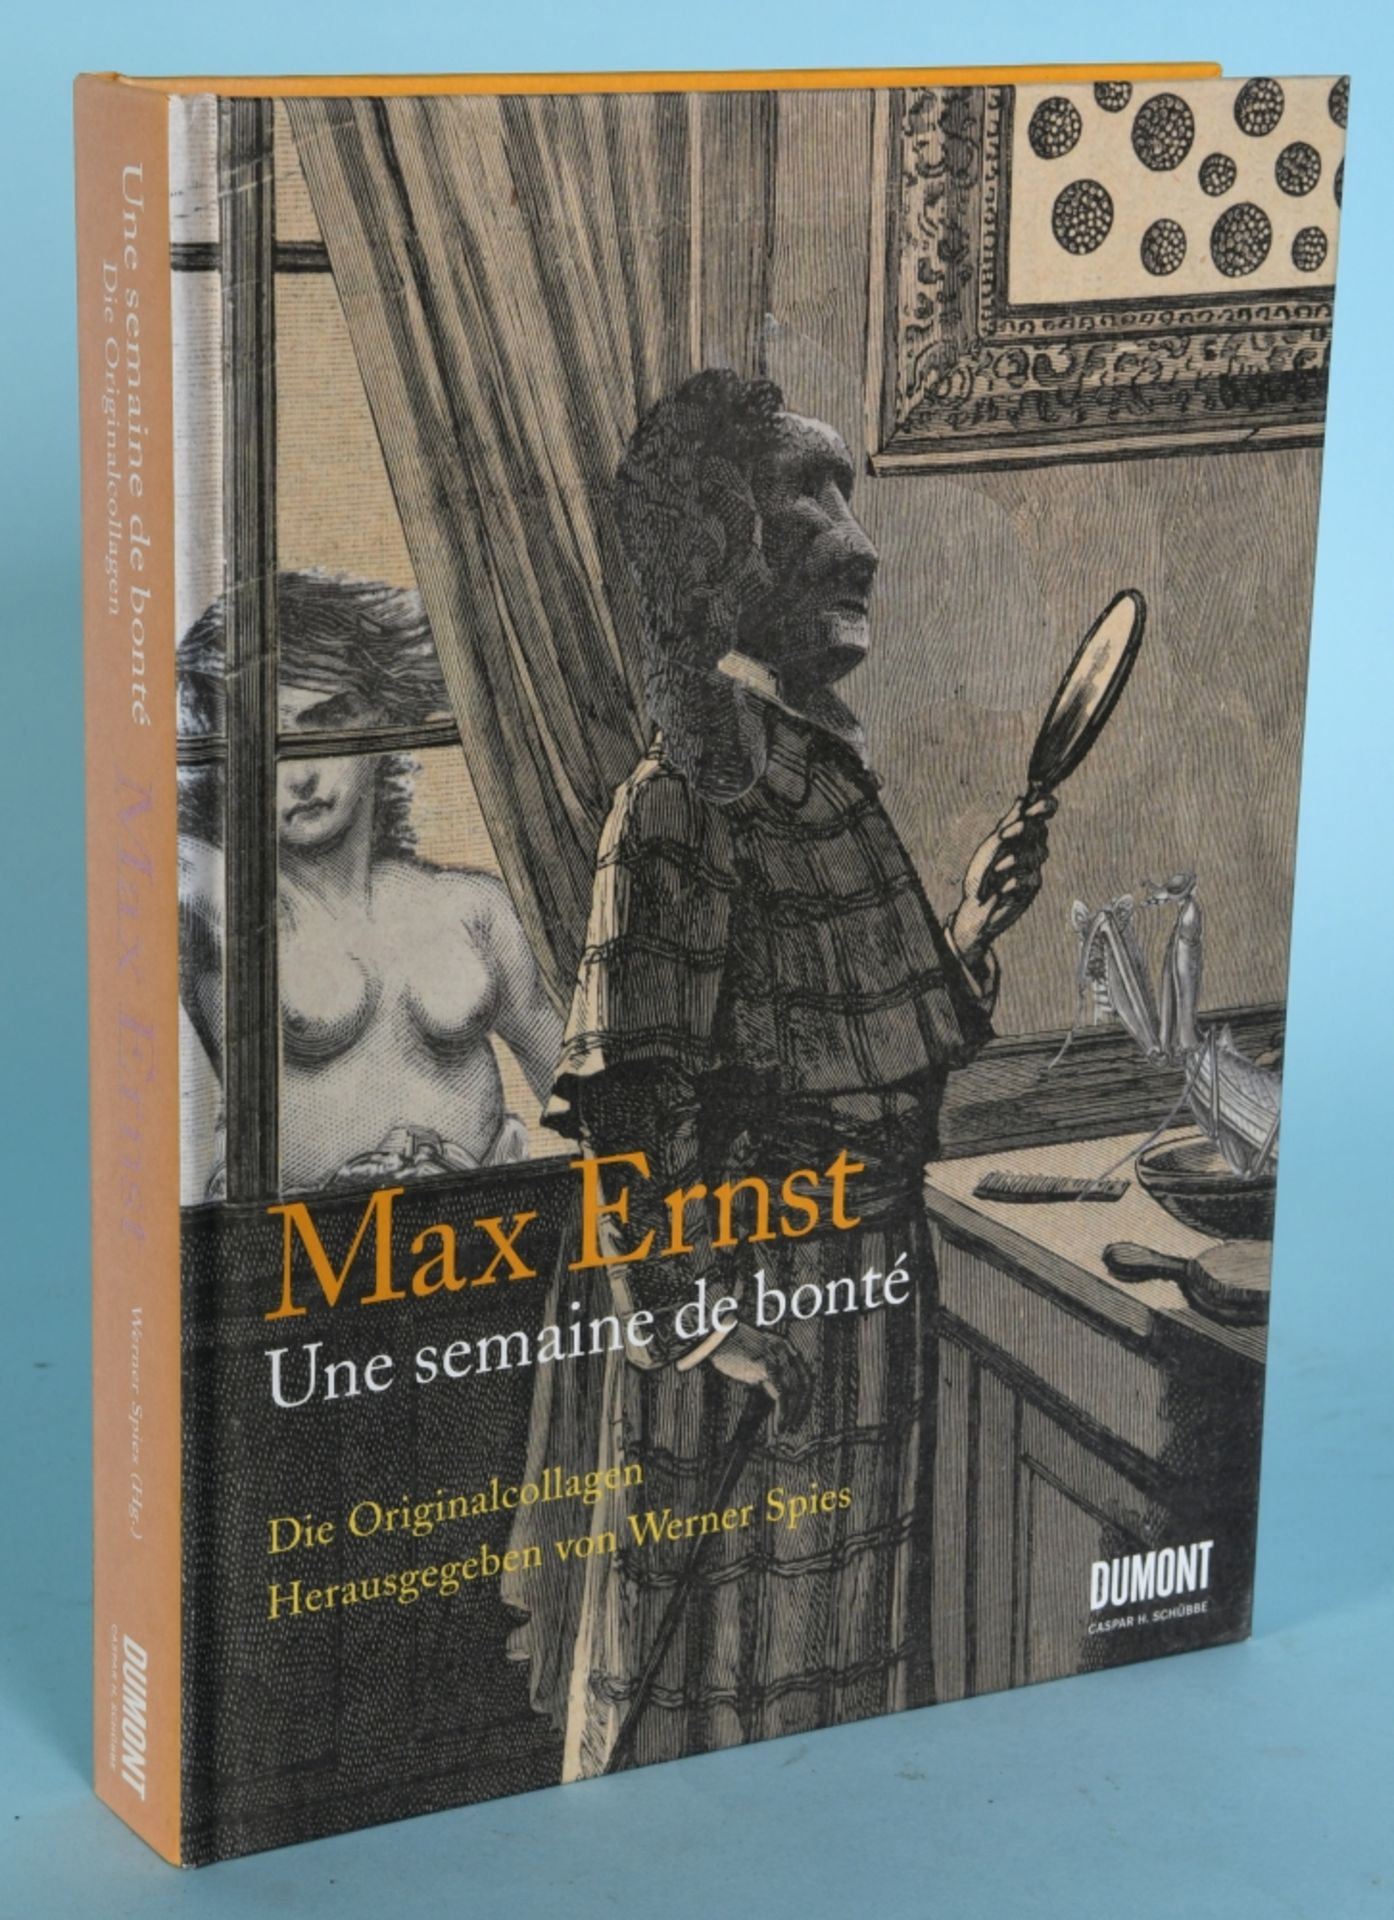 Spies, Werner (Hrsg.) "Max Ernst - Une semaine de bonté. Die Originalcollagen"